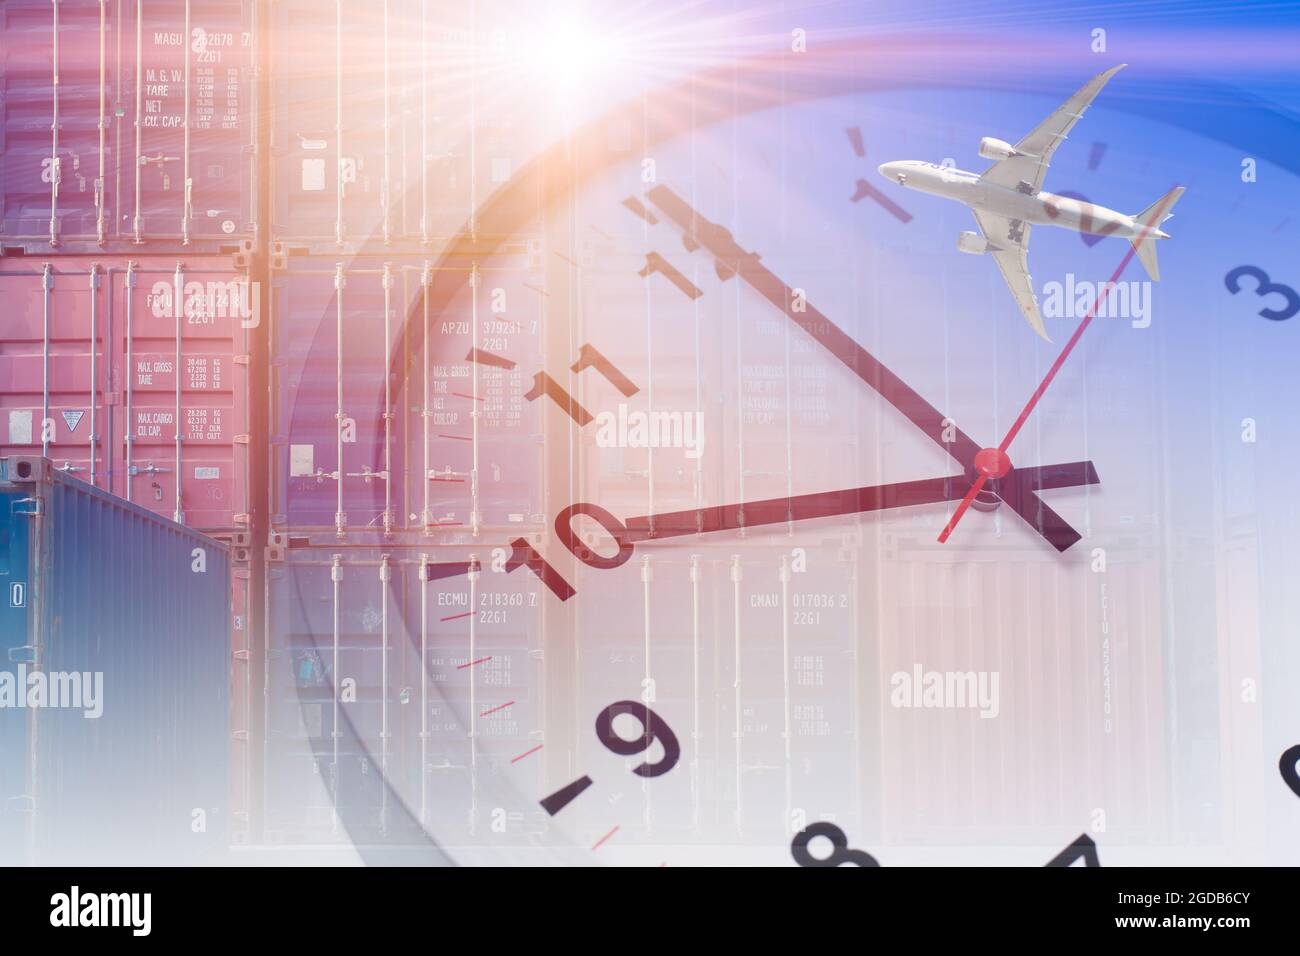 Versandzeiten. Luftverkehr mit Cargo-Port Container-Overlay mit Wecker Arbeitszeiten Konzept Hintergrund. Stockfoto